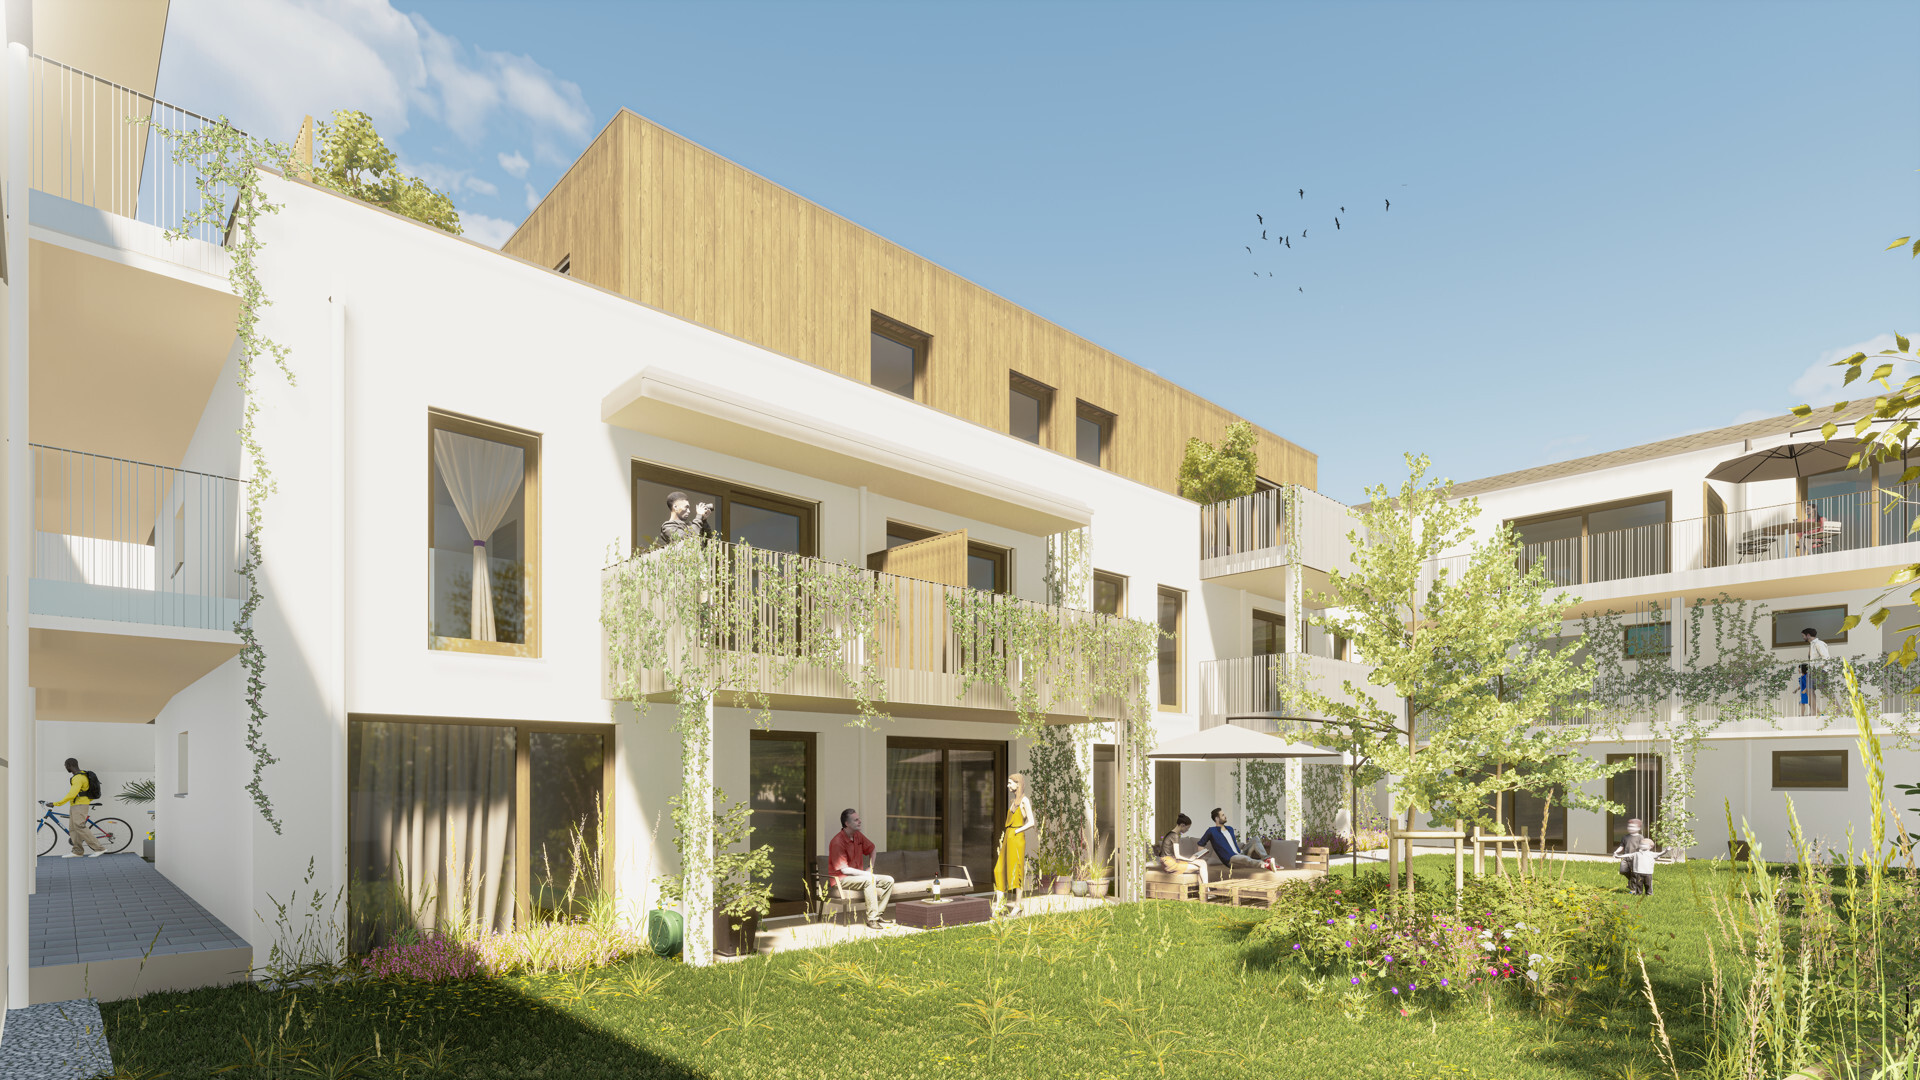 Naturnahes Wohnen in perfekter Lage in Mödling - 4 Zimmer-Gartenwohnung zu kaufen in 2340 Mödling